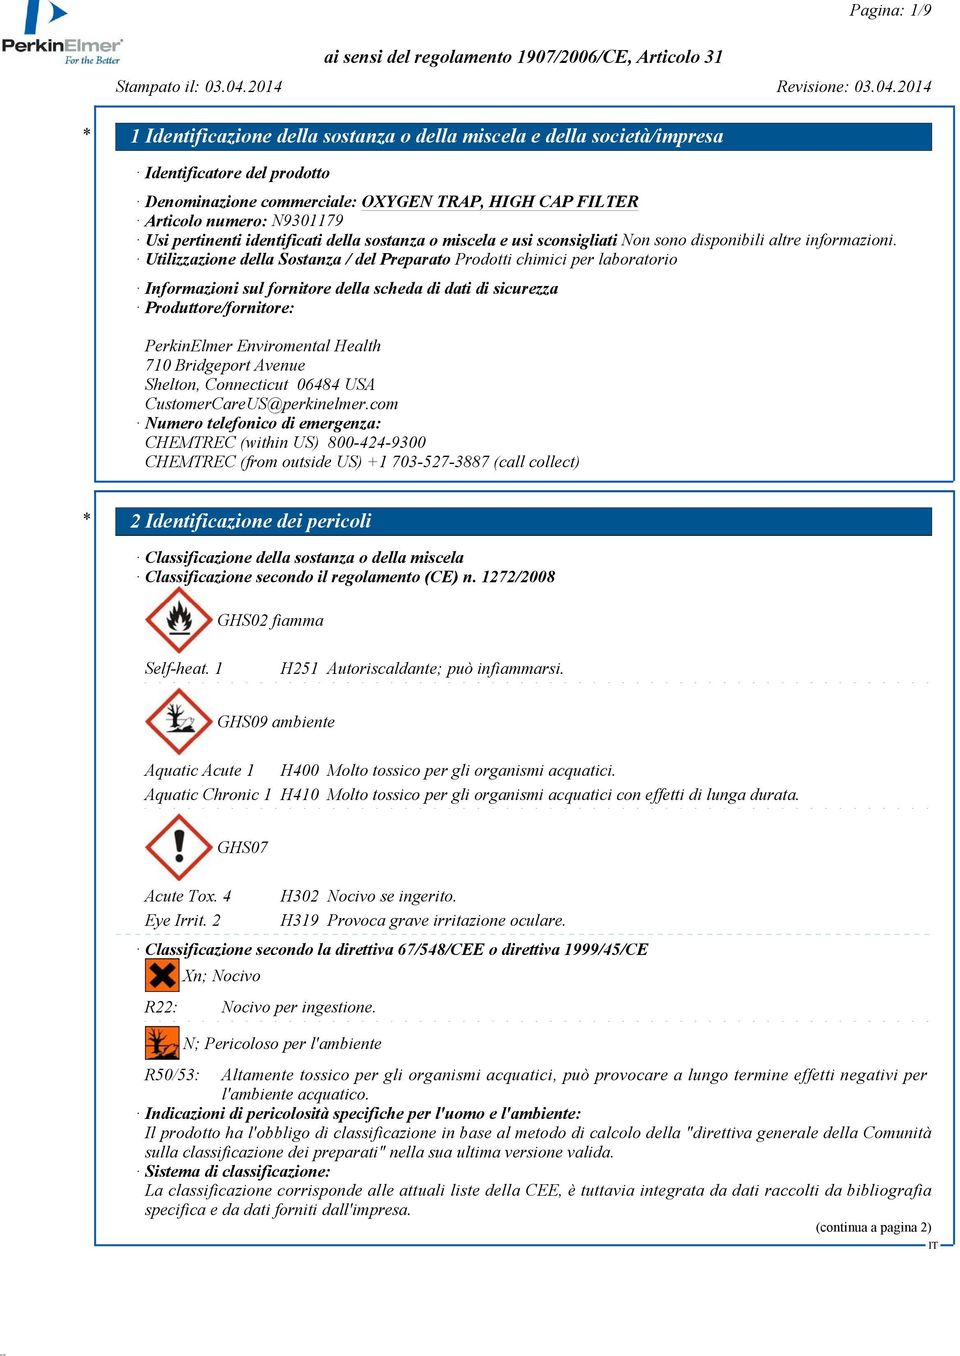 Utilizzazione della Sostanza / del Preparato Prodotti chimici per laboratorio Informazioni sul fornitore della scheda di dati di sicurezza Produttore/fornitore: PerkinElmer Enviromental Health 710